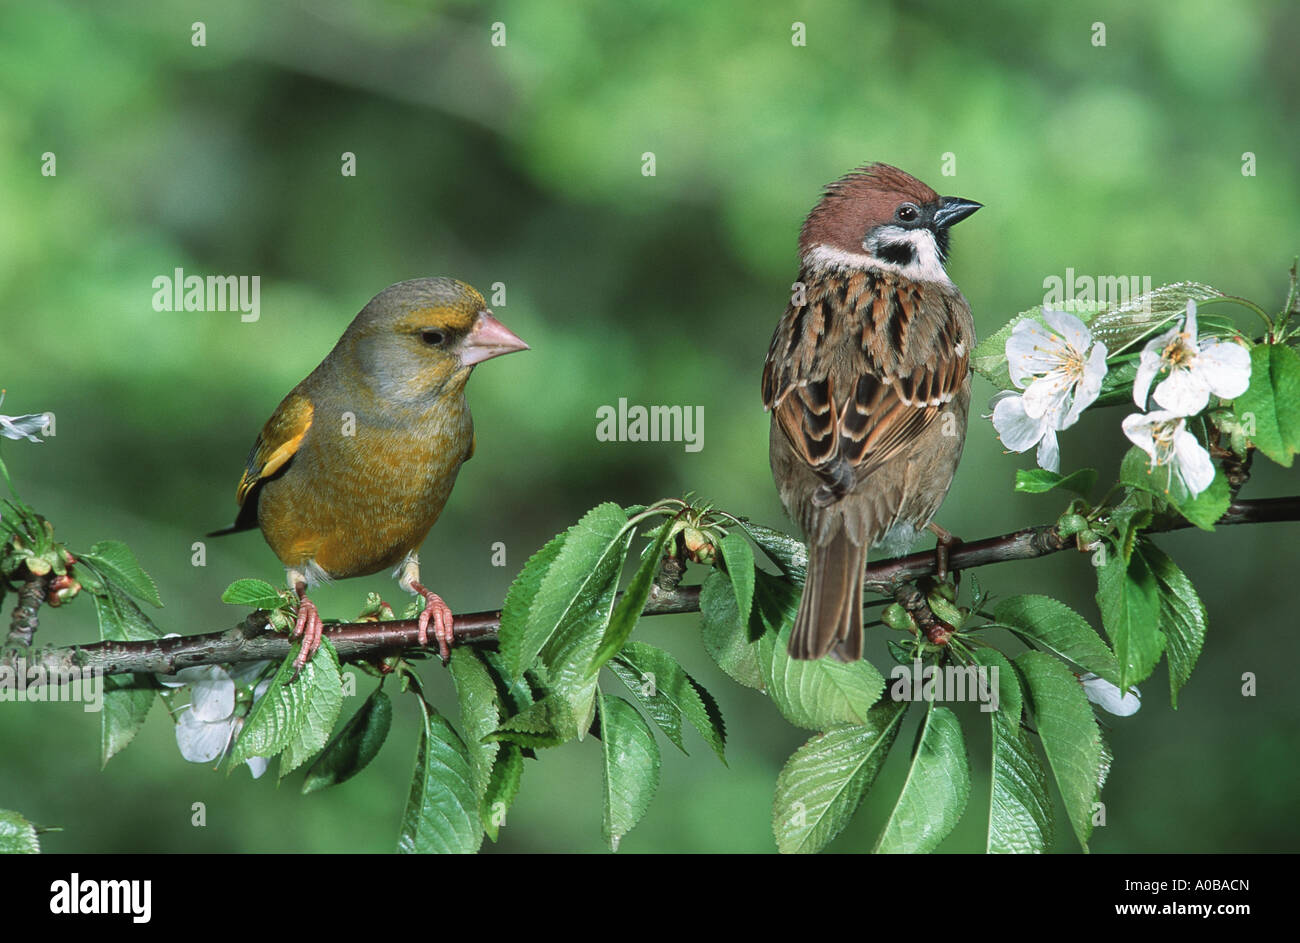 Árbol de Eurasia sparrow y verderón (Passer montanus, Carduelis chloris), sentado en twig Foto de stock